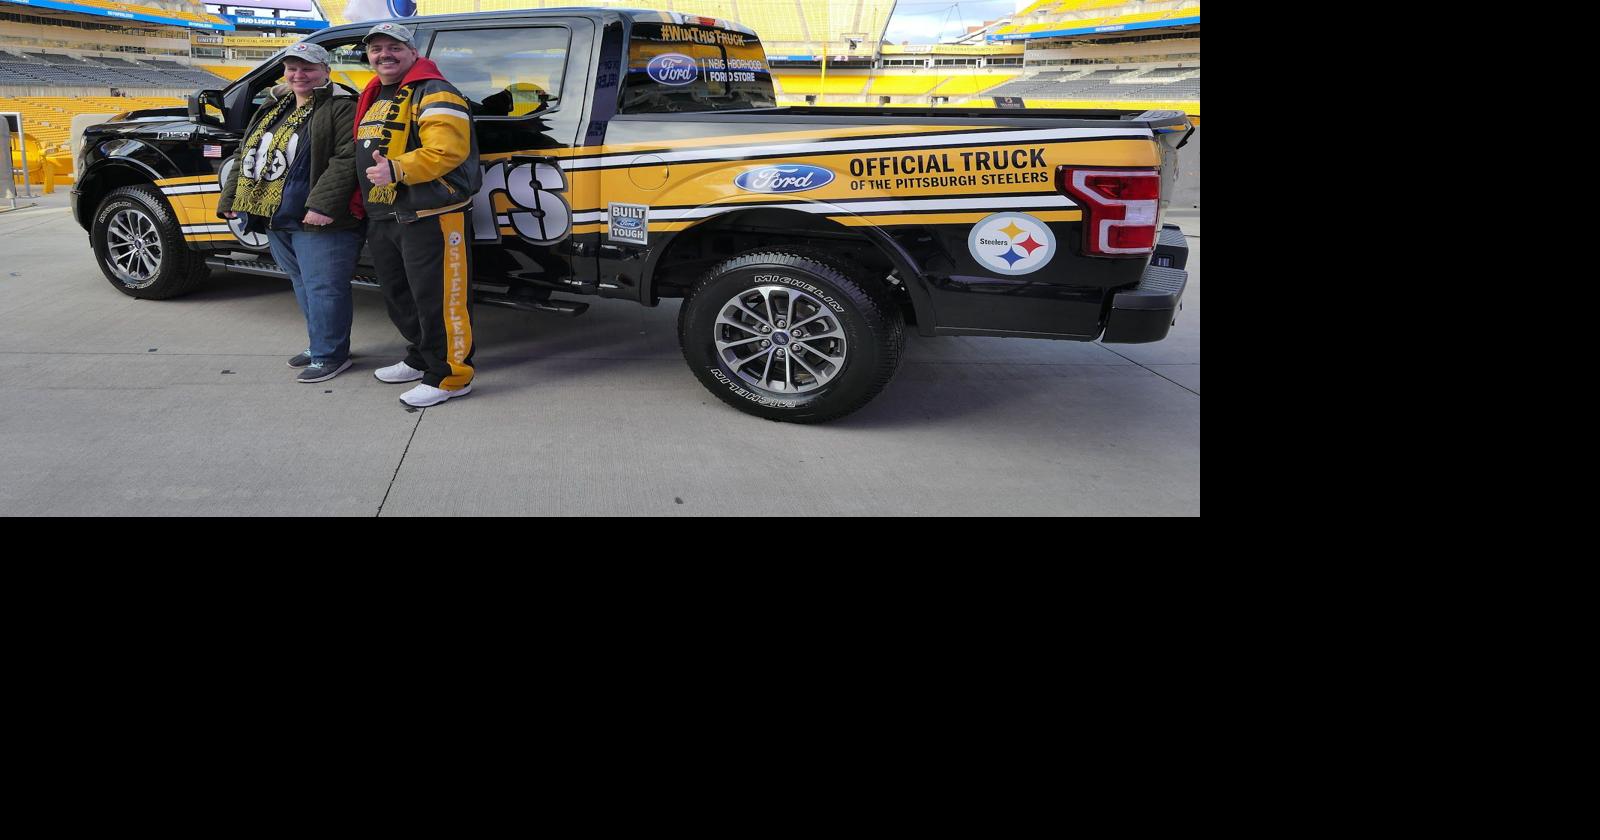 Johnstown man wins official Steelers truck, News